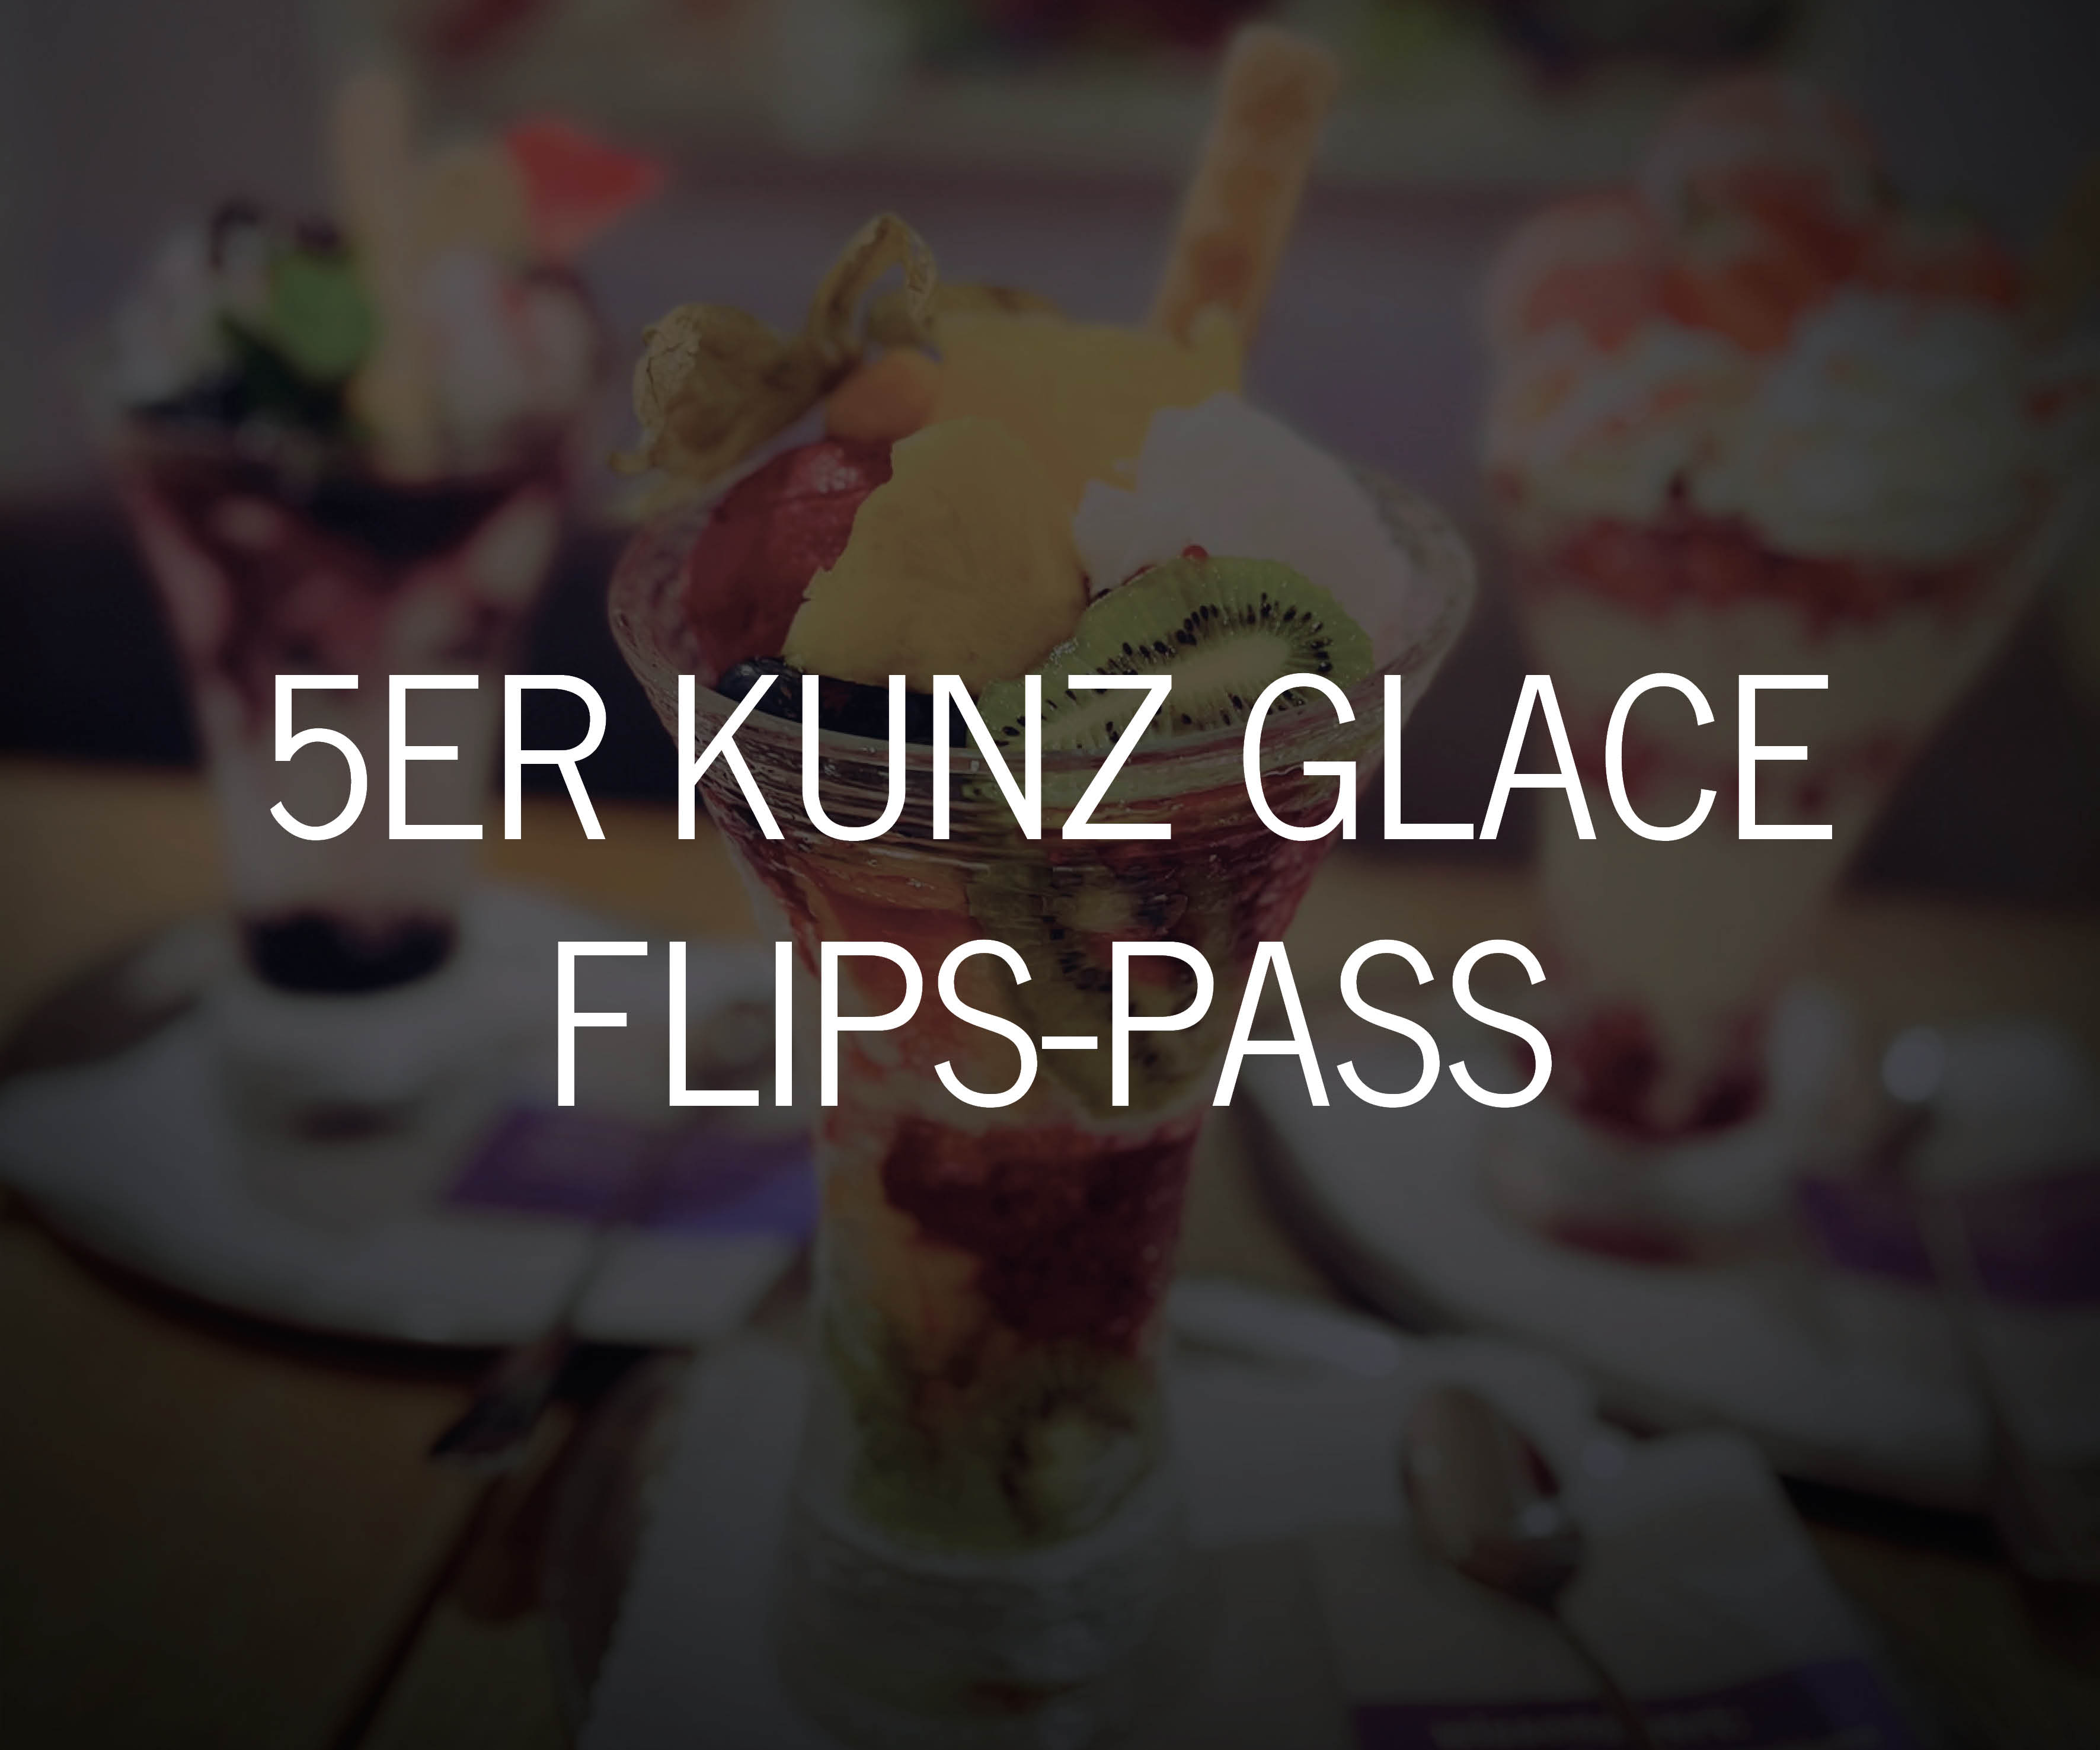 5er kunz Glacé Flips-Pass mit 3 Kugeln